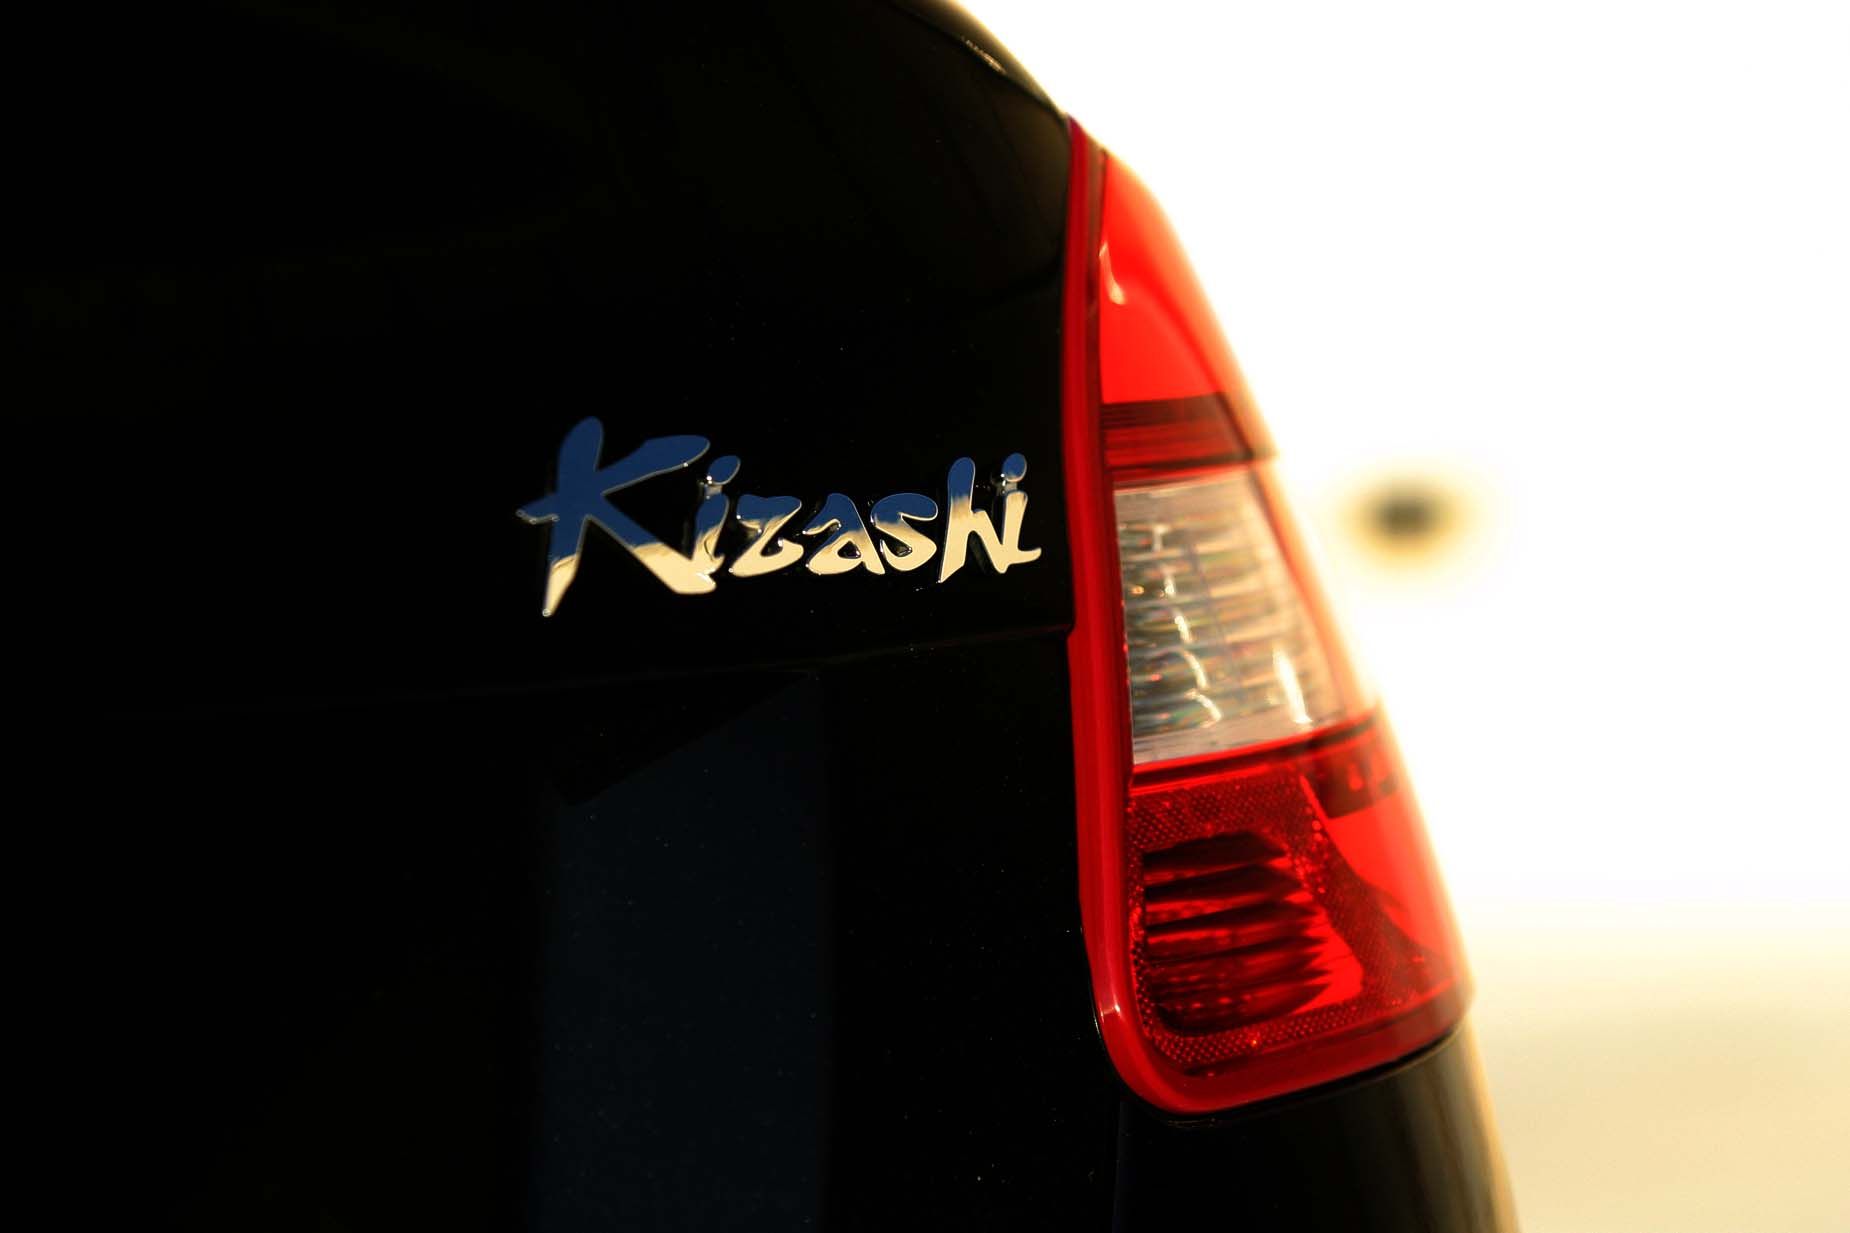 2010 Suzuki Kizashi SLS